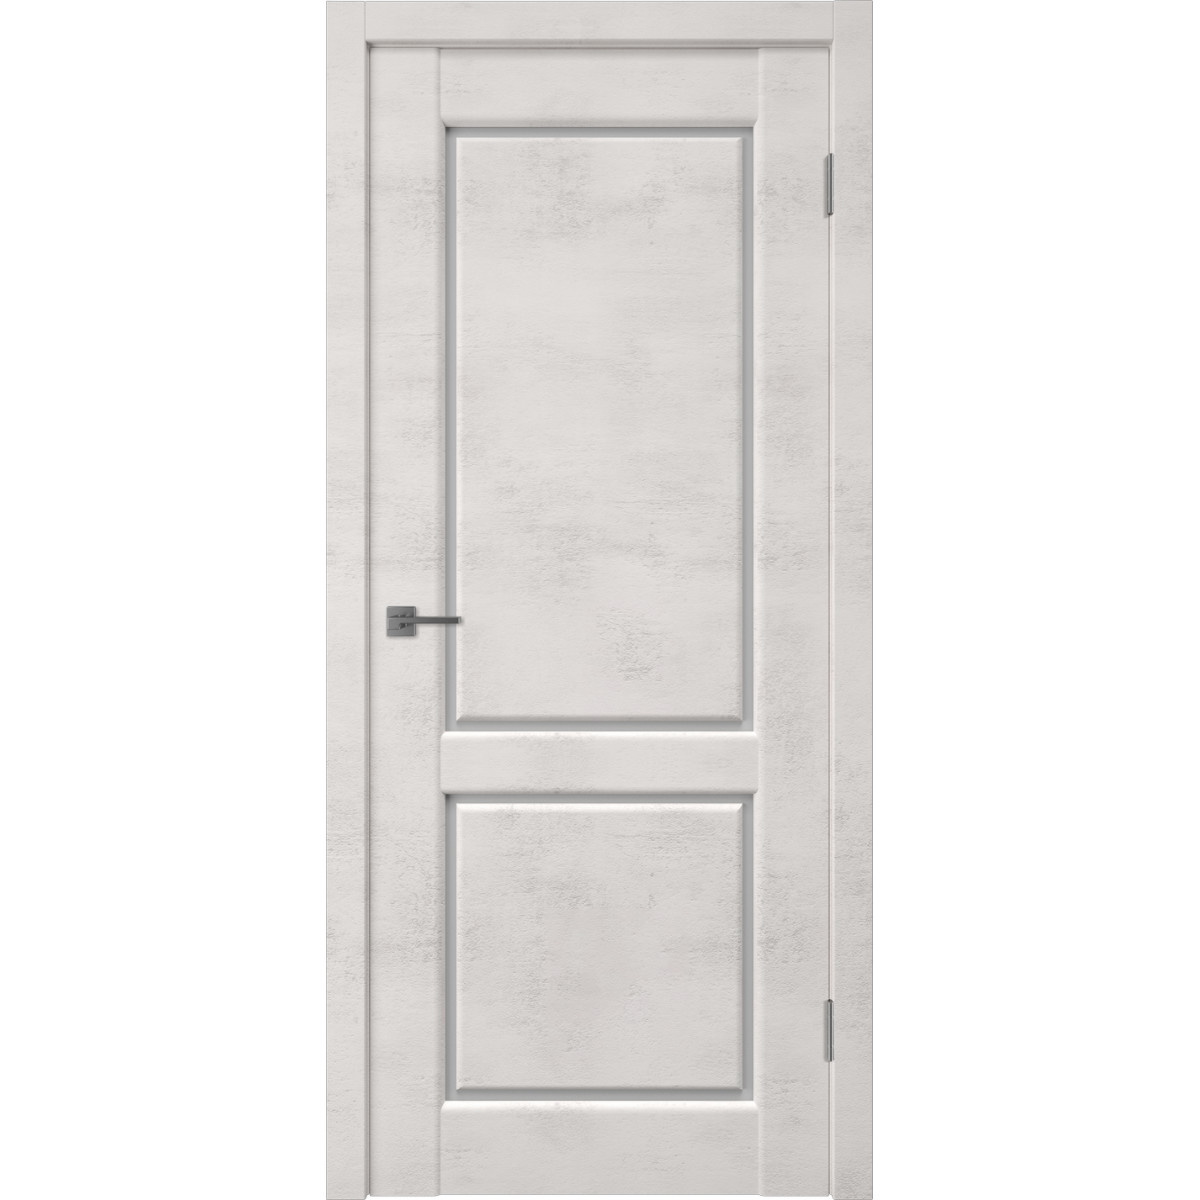 Дверь межкомнатная остеклённая Манхэттен 2 с фурнитурой 70х200 см, ПВХ, цвет лофт крем